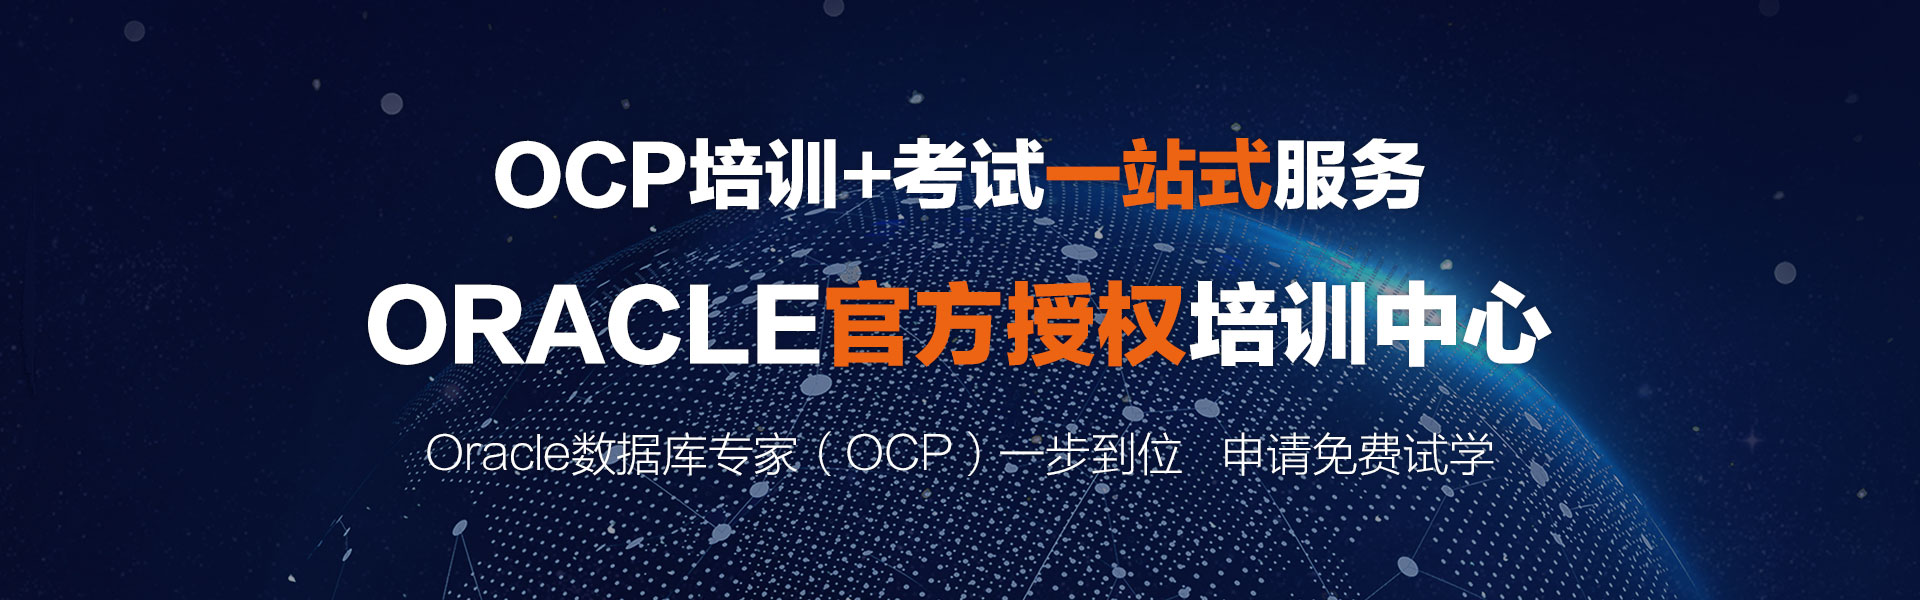 Oracle OCP